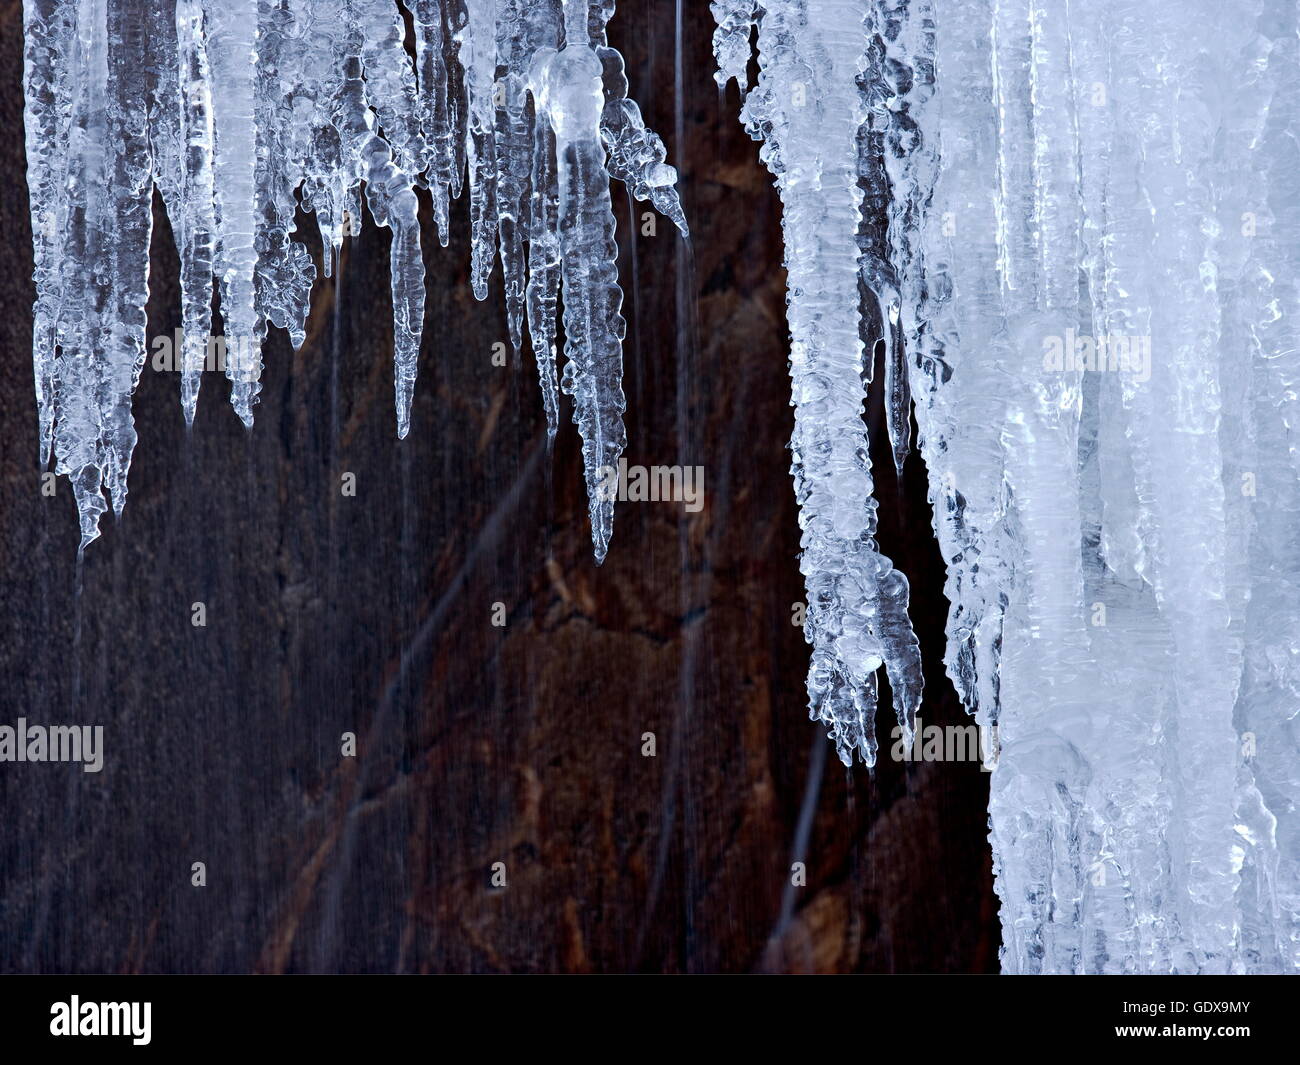 Géographie / billet, de l'eau, des sculptures en glace naturelle en hiver, Mont-Blanc, Chamonix, France,-Additional-Rights Clearance-Info-Not-Available Banque D'Images